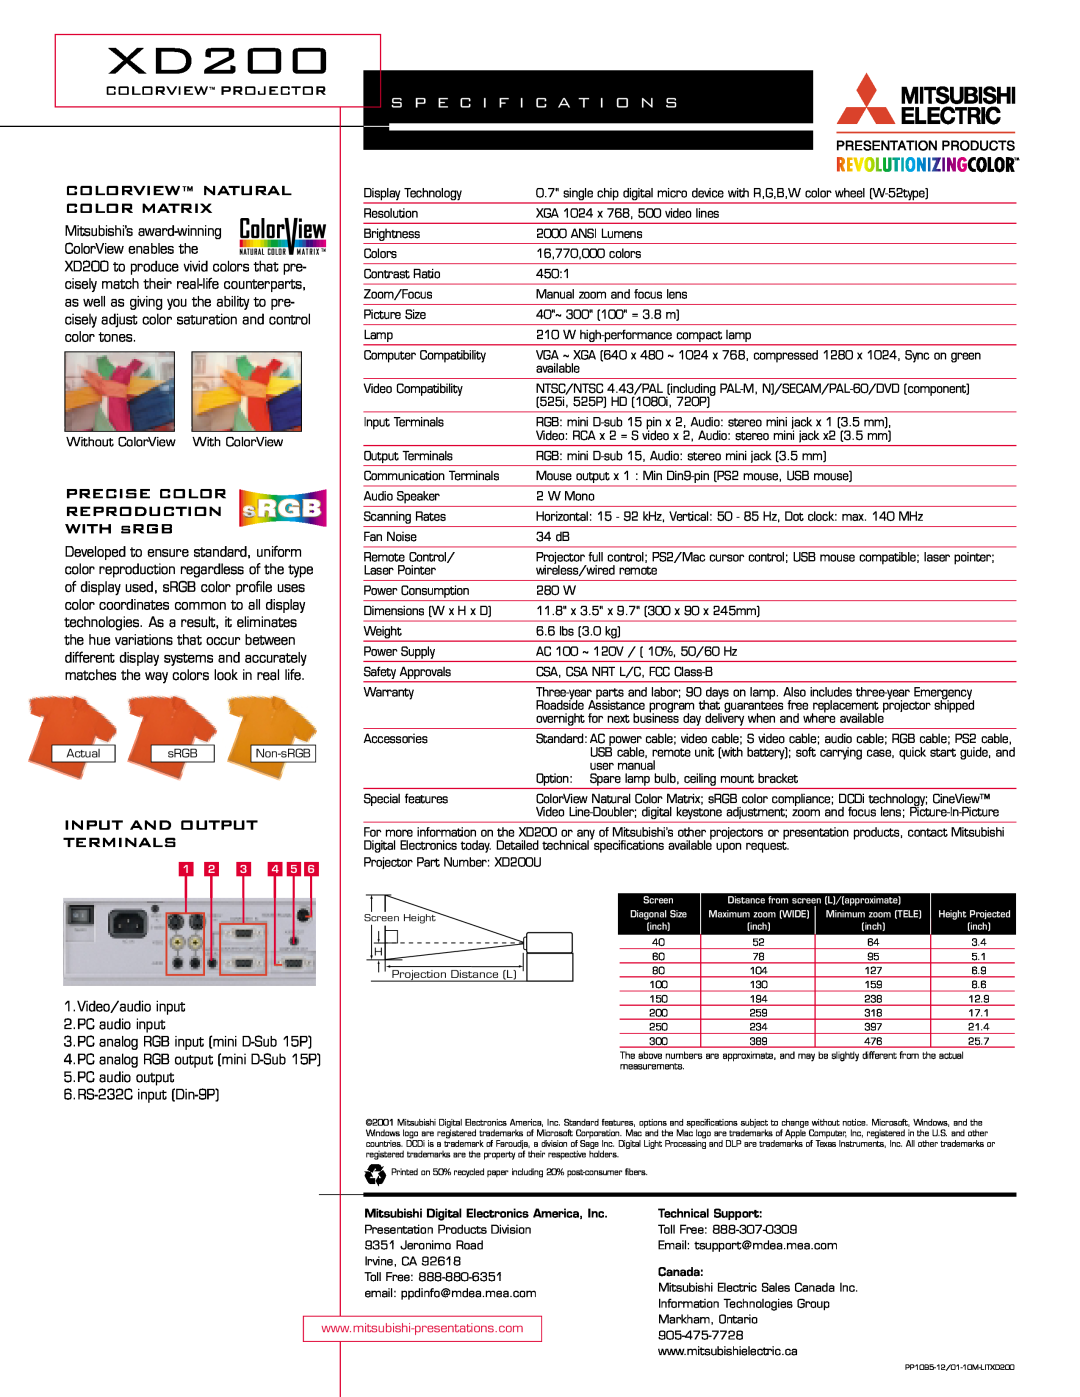 Mitsubishi Electronics warranty S P E C I F I C A T I O N S, XD200, colorview projector, Colorview Natural, Color Matrix 